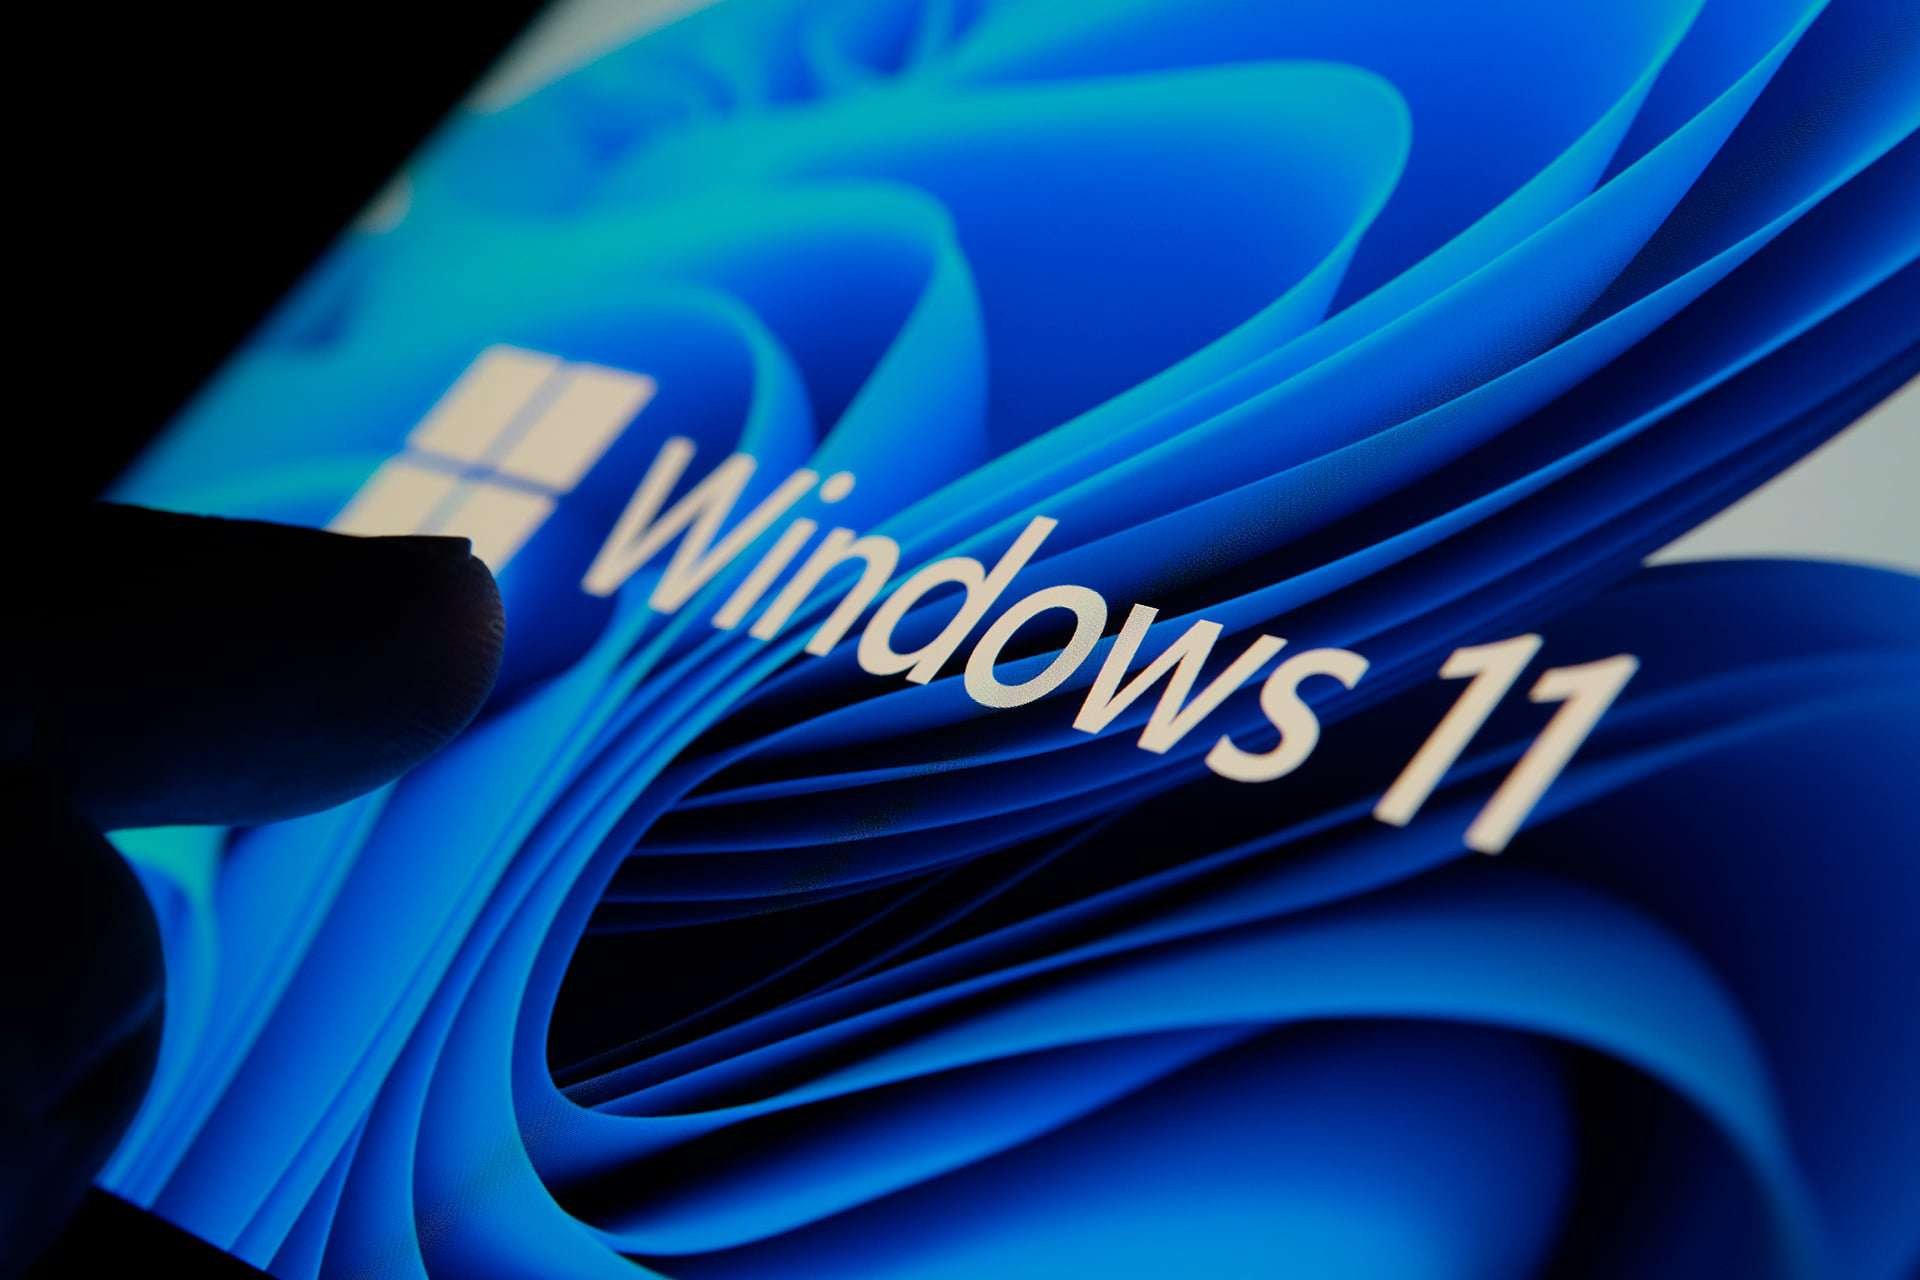 Microsoft continua a incentivar utilizadores do Windows 10 ao upgrade